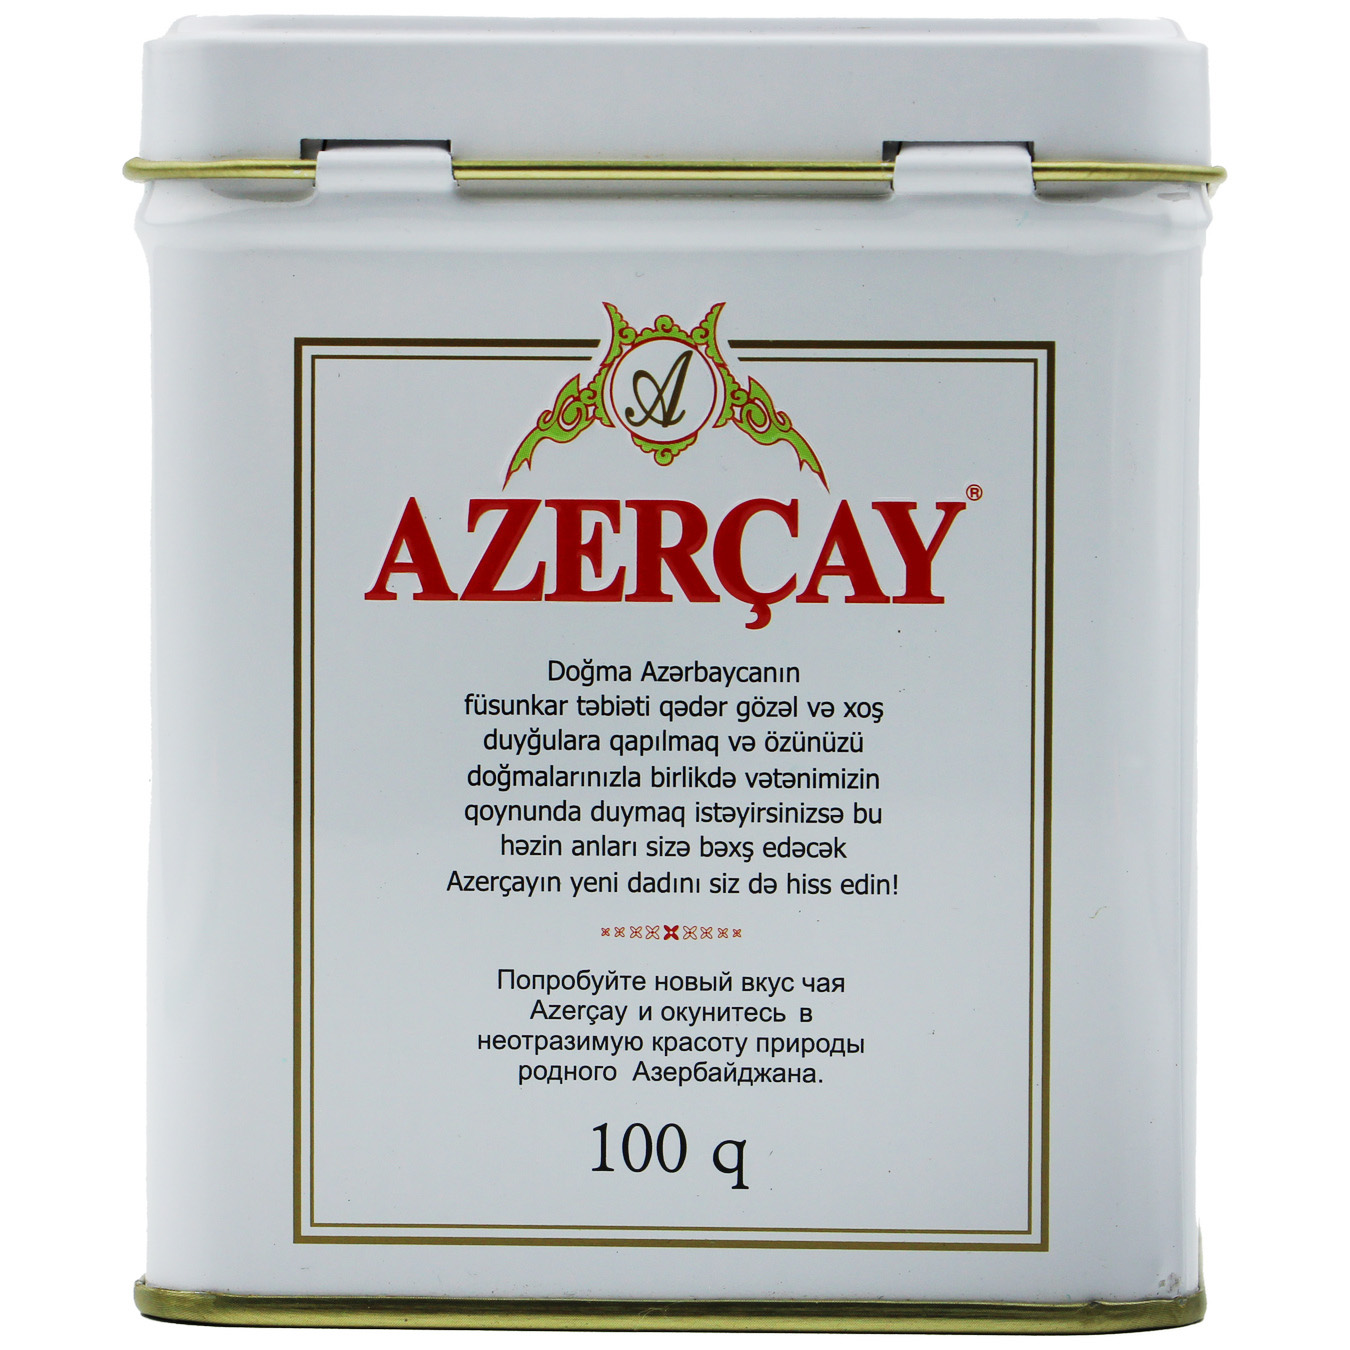 Azercay Buket Leaf Black Tea 100g
 3